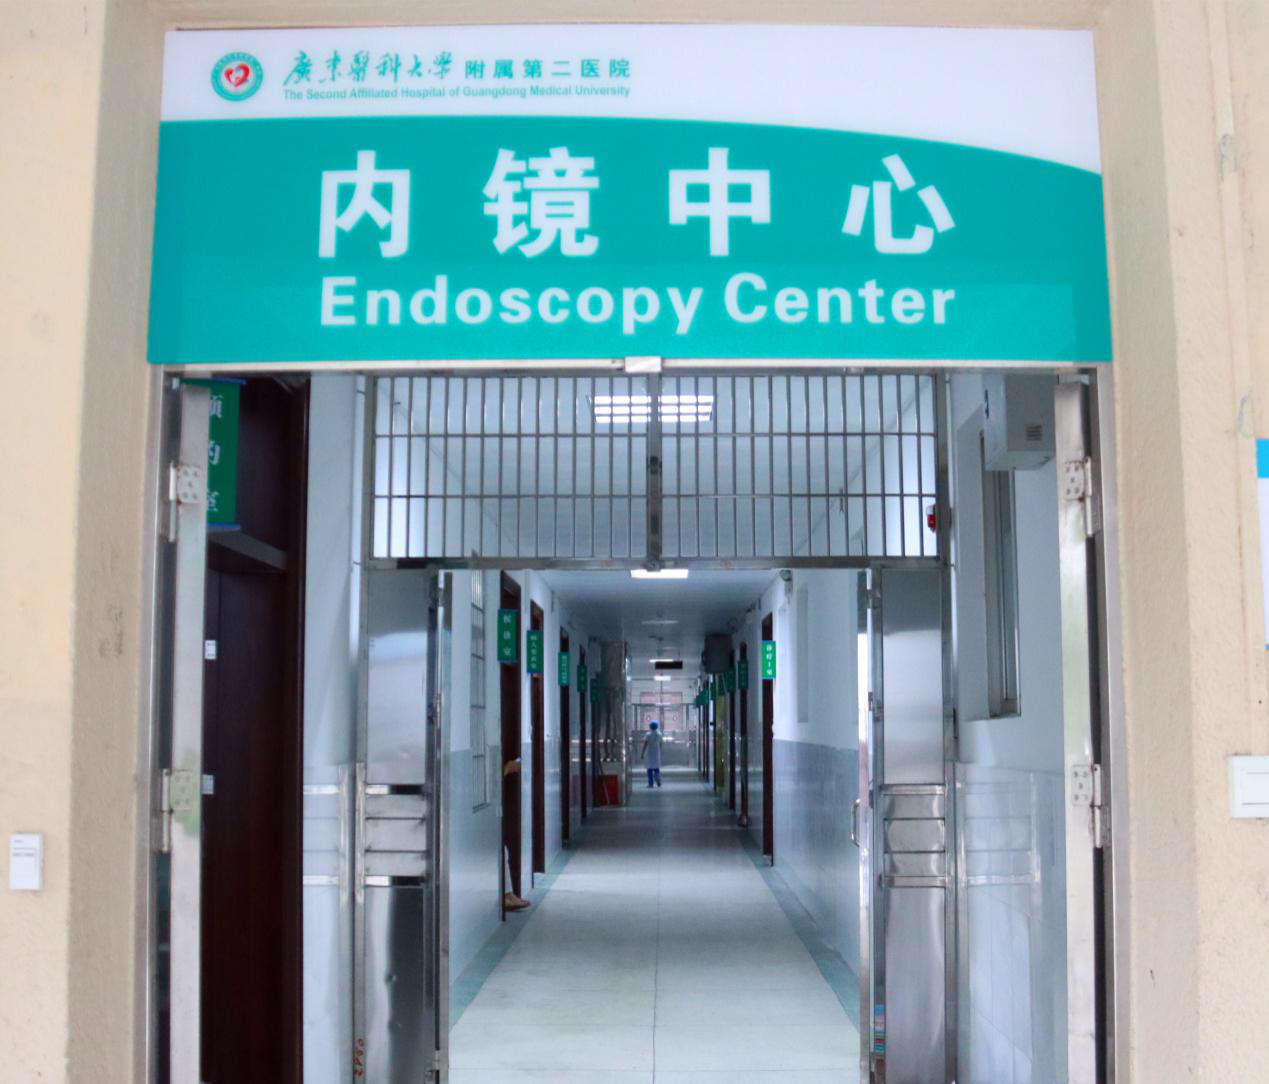 湛江：广东医附二院启用新消化内镜中心 竭诚服务患者